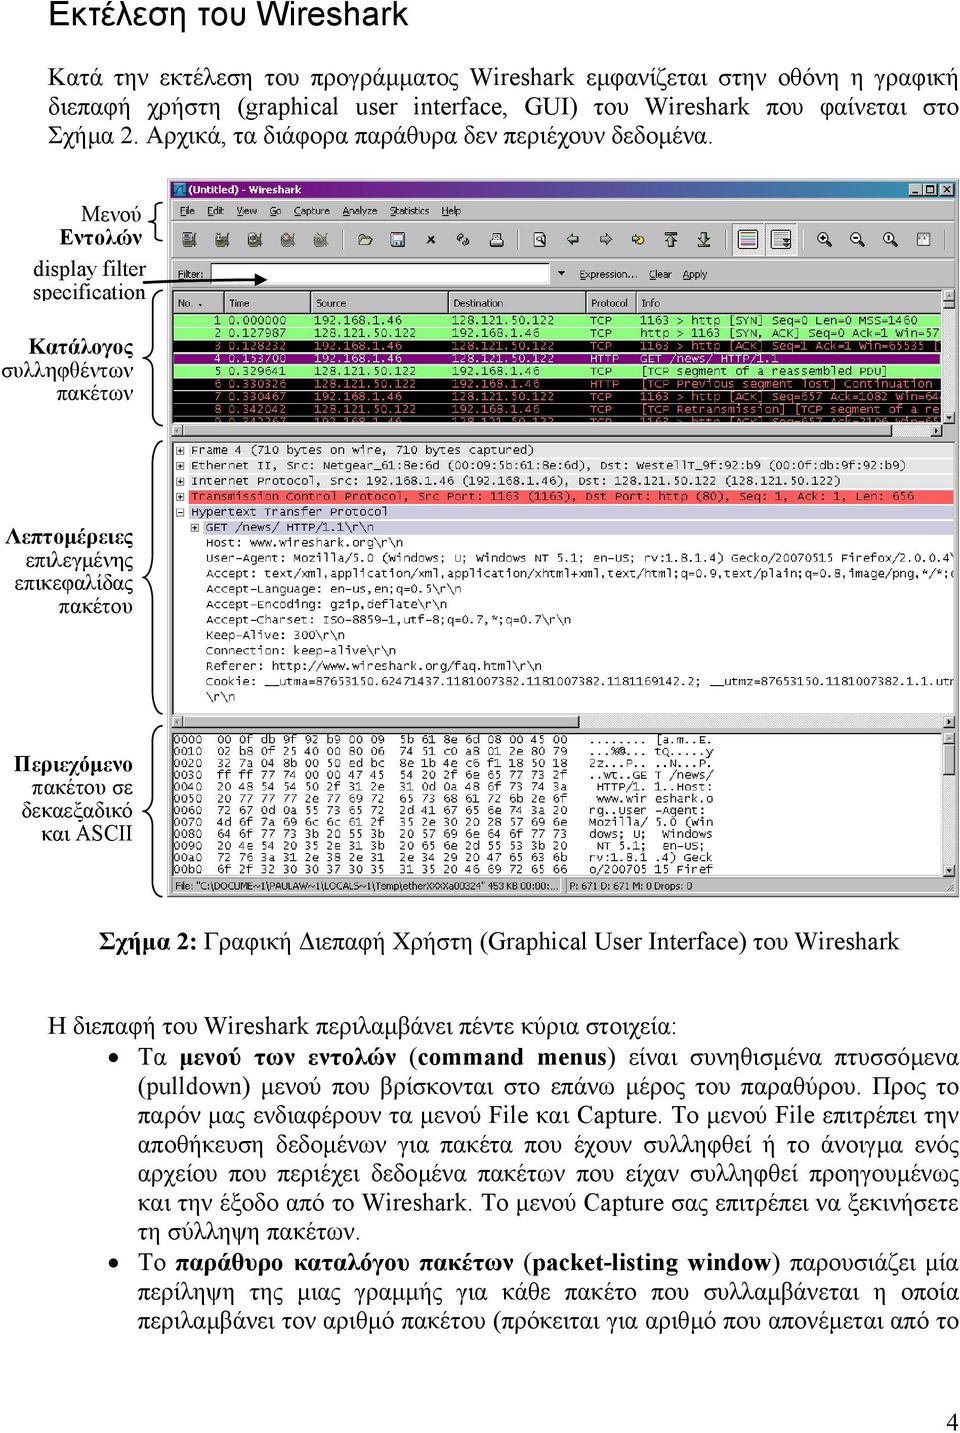 Μενού Εντολών display filter specification Κατάλογος συλληφθέντων πακέτων Λεπτοµέρειες επιλεγµένης επικεφαλίδας πακέτου Περιεχόµενο πακέτου σε δεκαεξαδικό και ASCII Σχήµα 2: Γραφική ιεπαφή Χρήστη